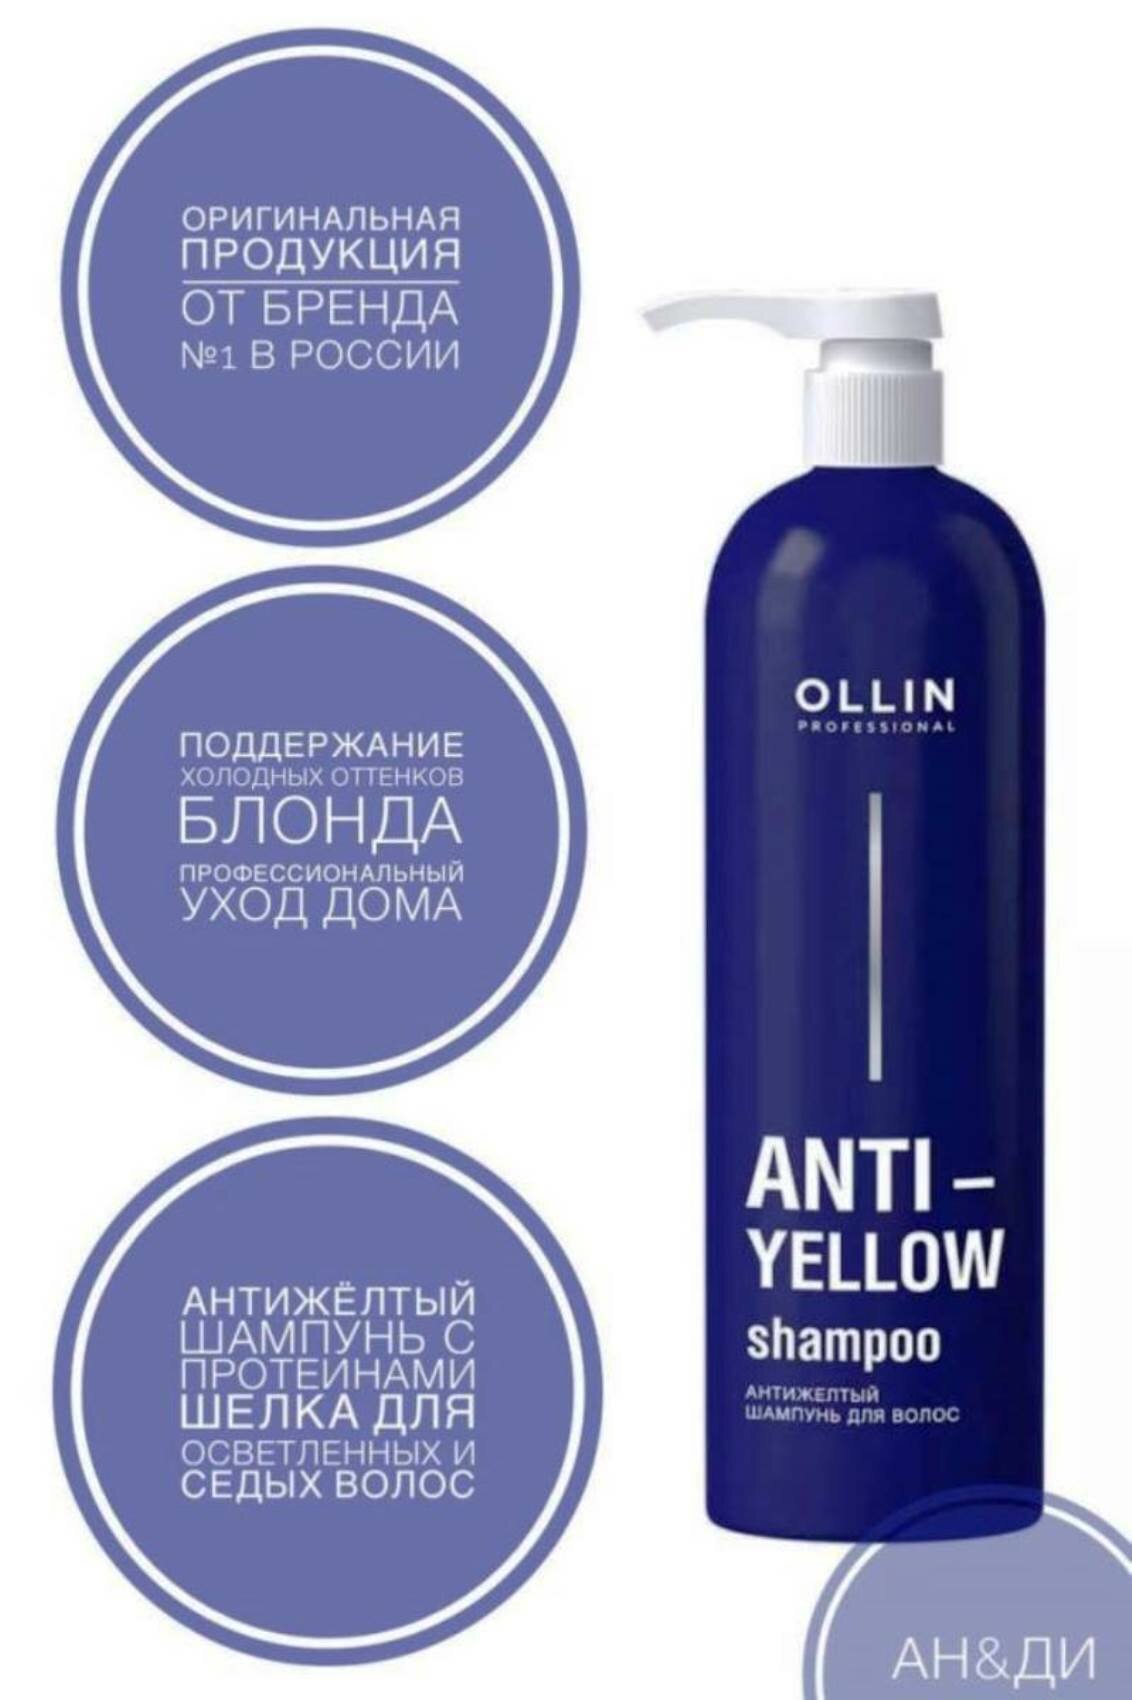 Шампунь антижелтый для волос Anti-Yellow Ollin Professional 500 мл